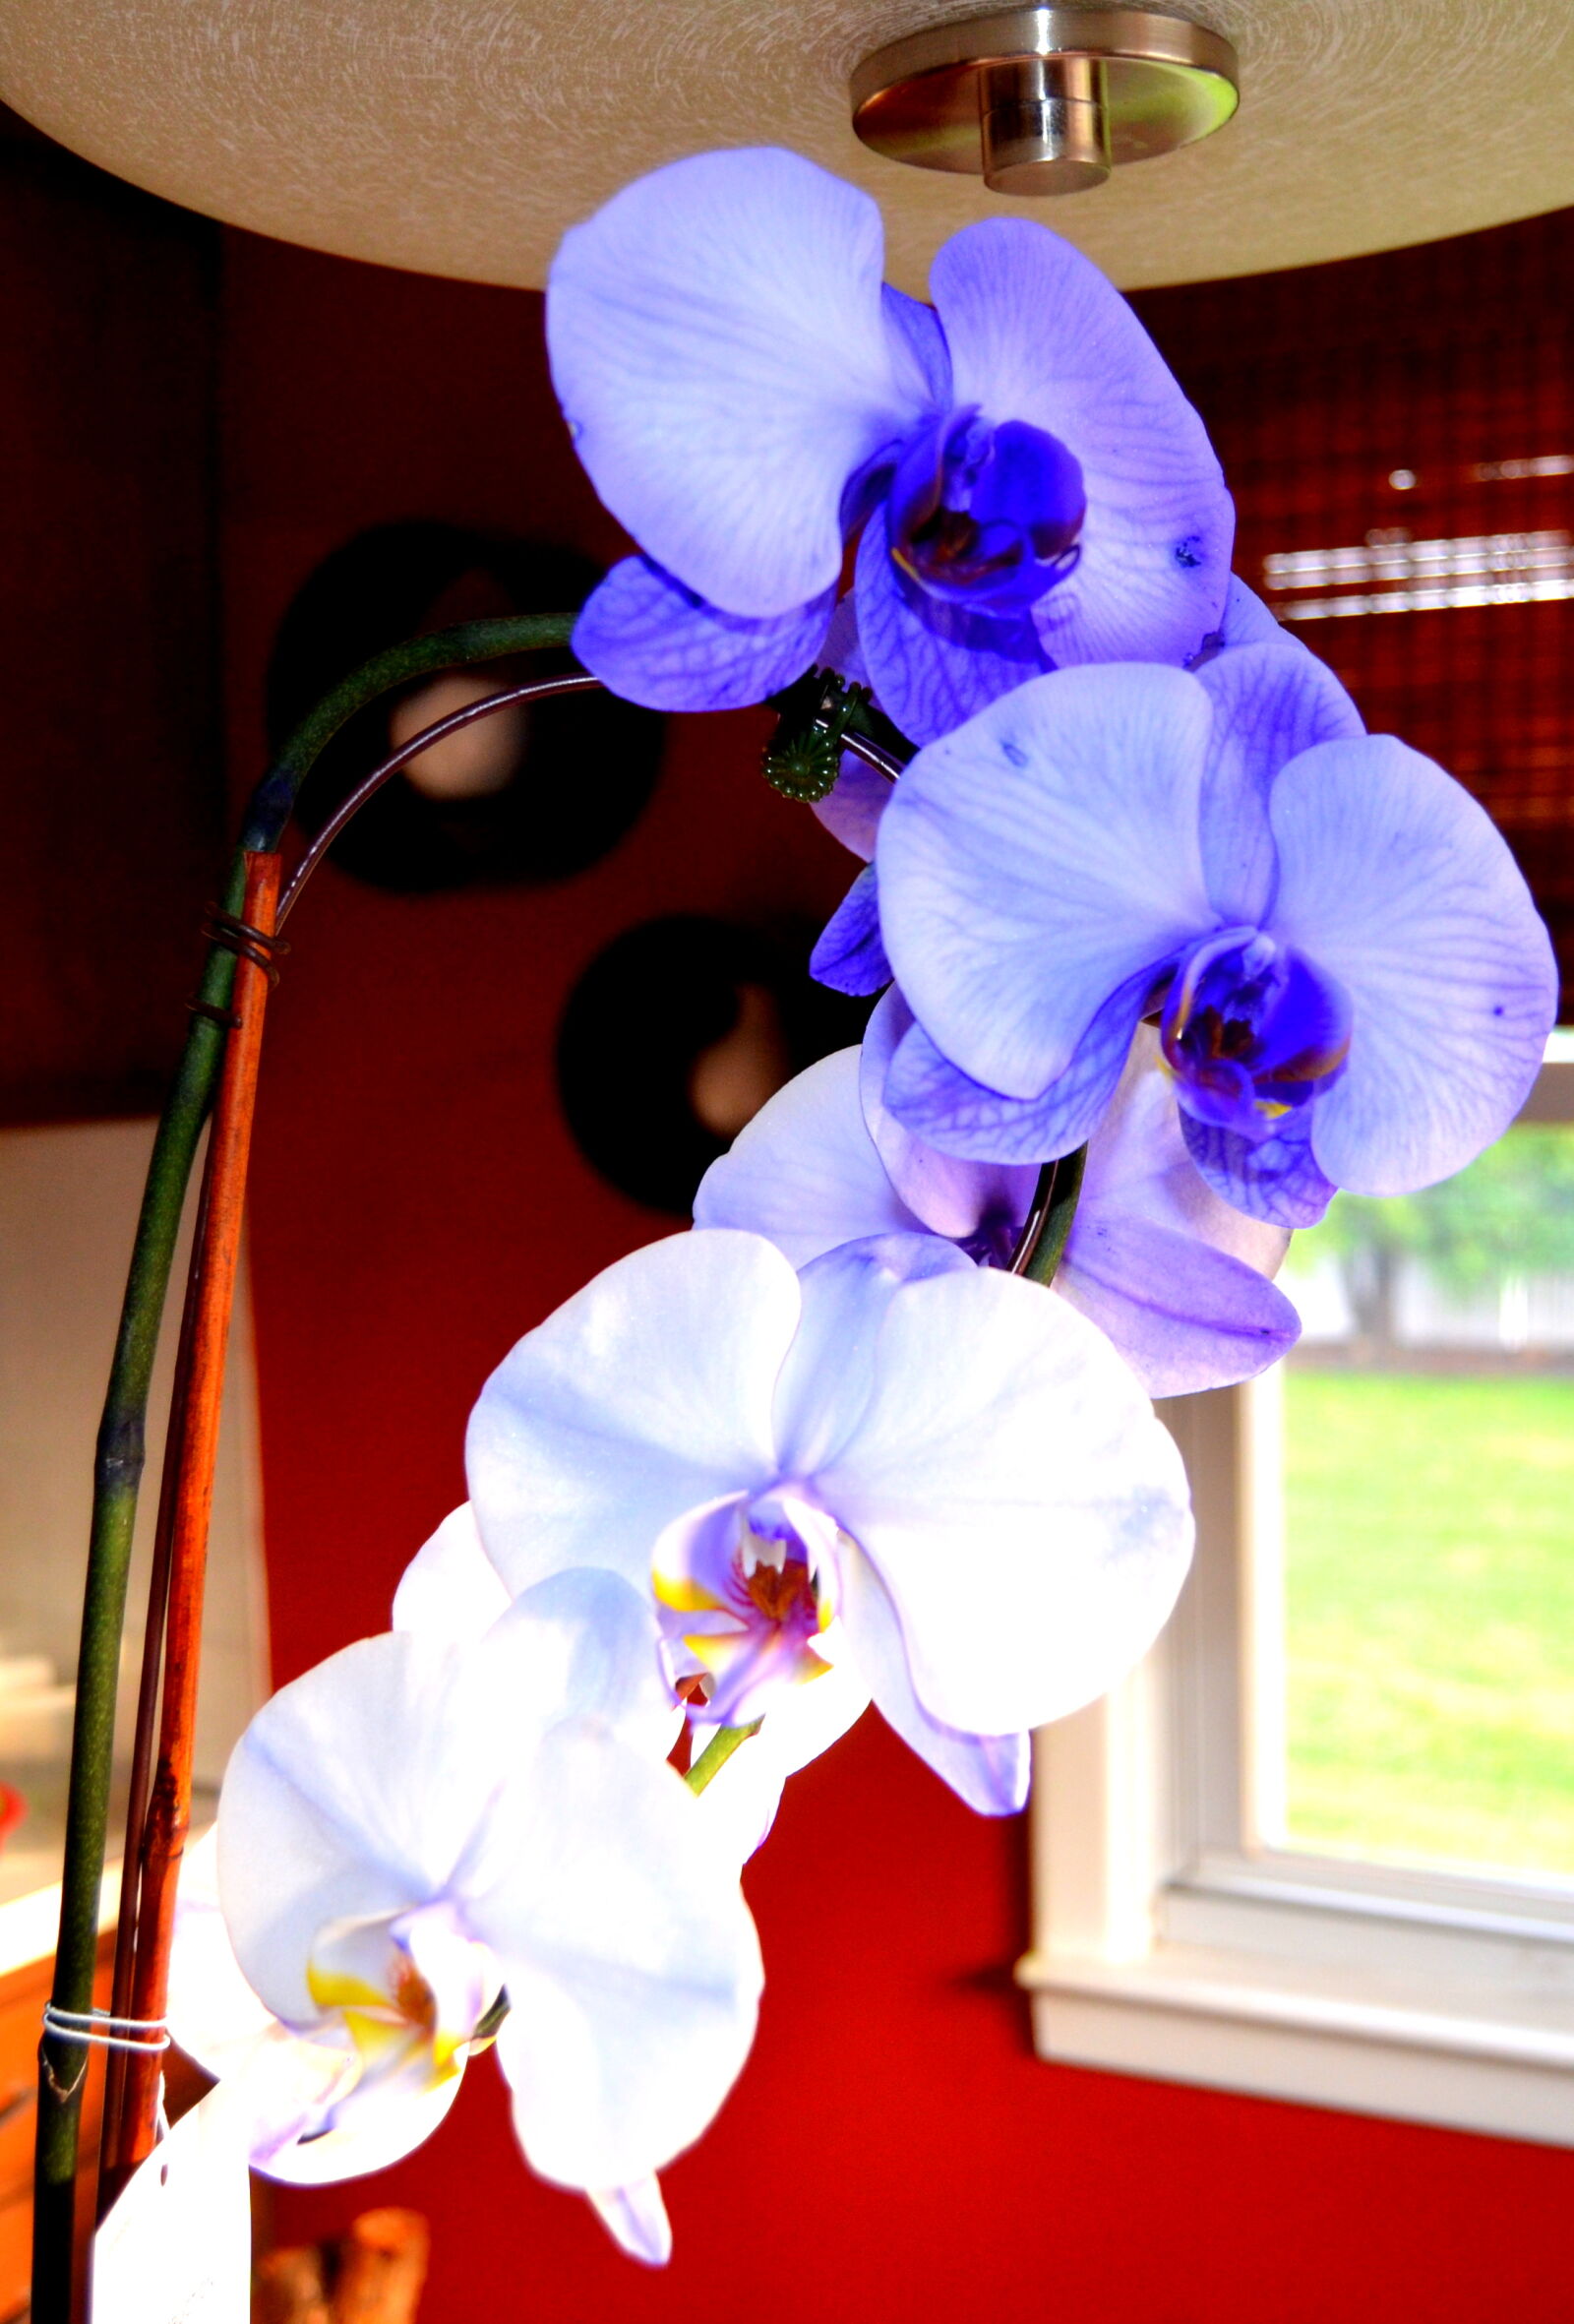 Nikon AF-S DX Nikkor 18-55mm F3.5-5.6G II sample photo. Flower, flowers, nice, orchid photography